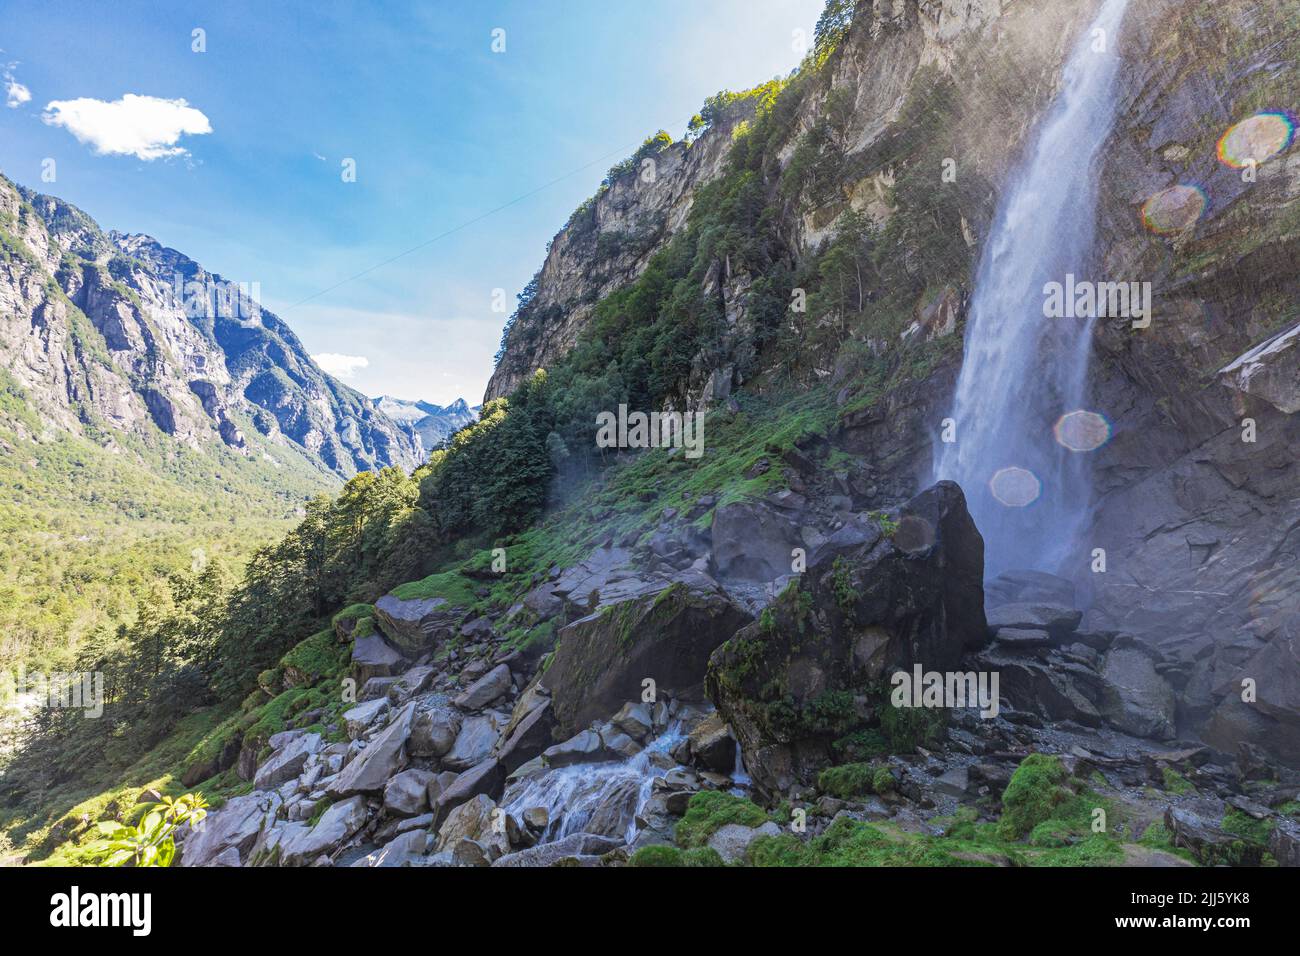 Cascata di Foroglio che si tuffa nelle rocce della valle Foto Stock